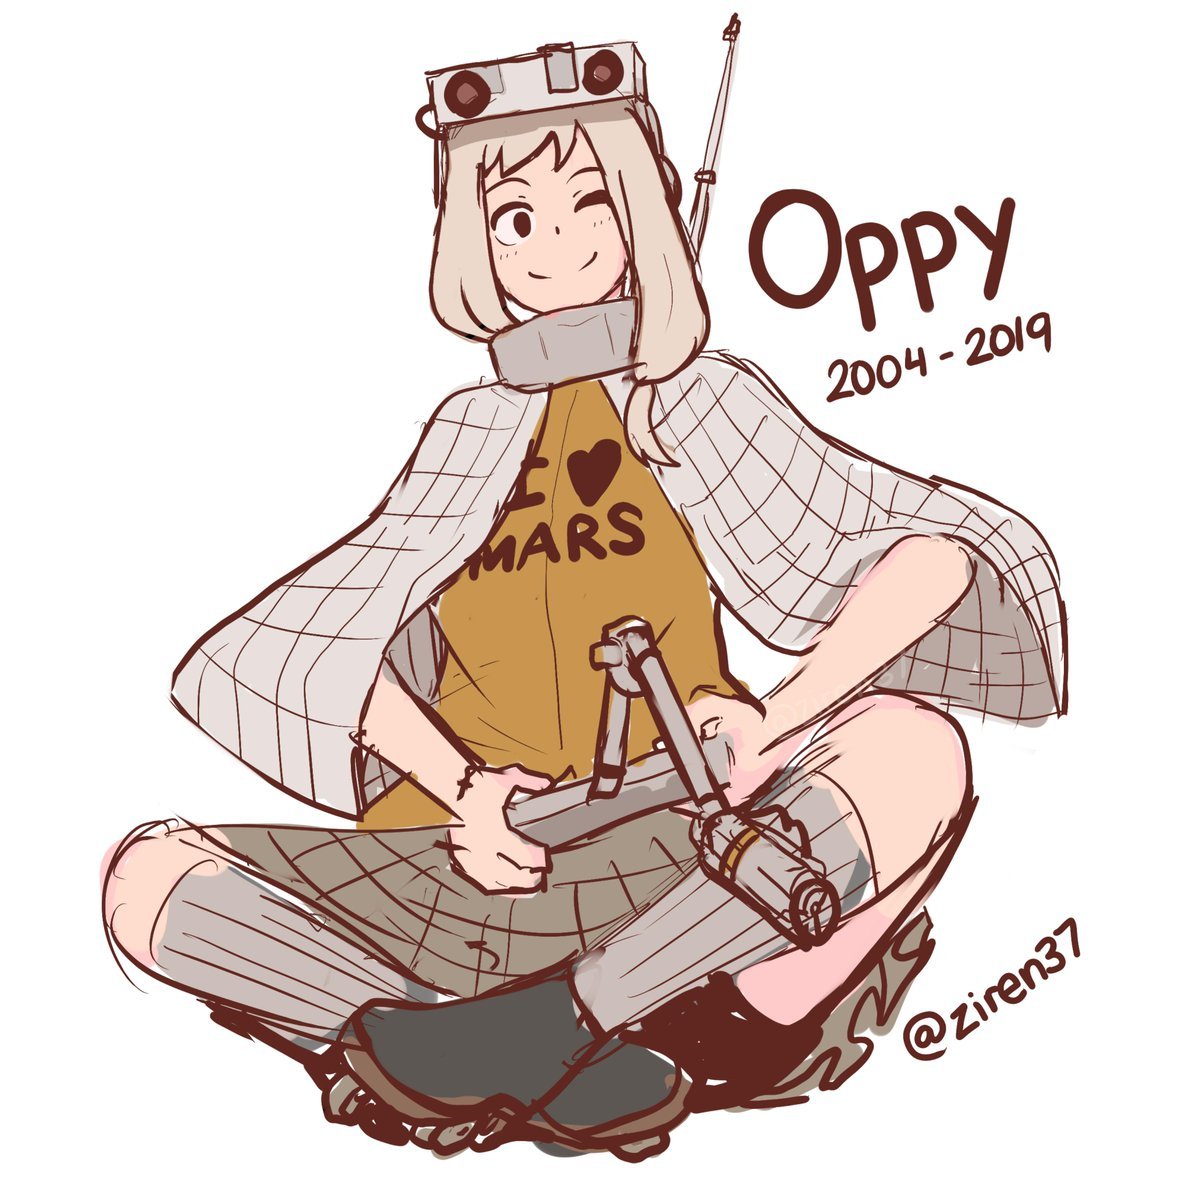 Oppy!